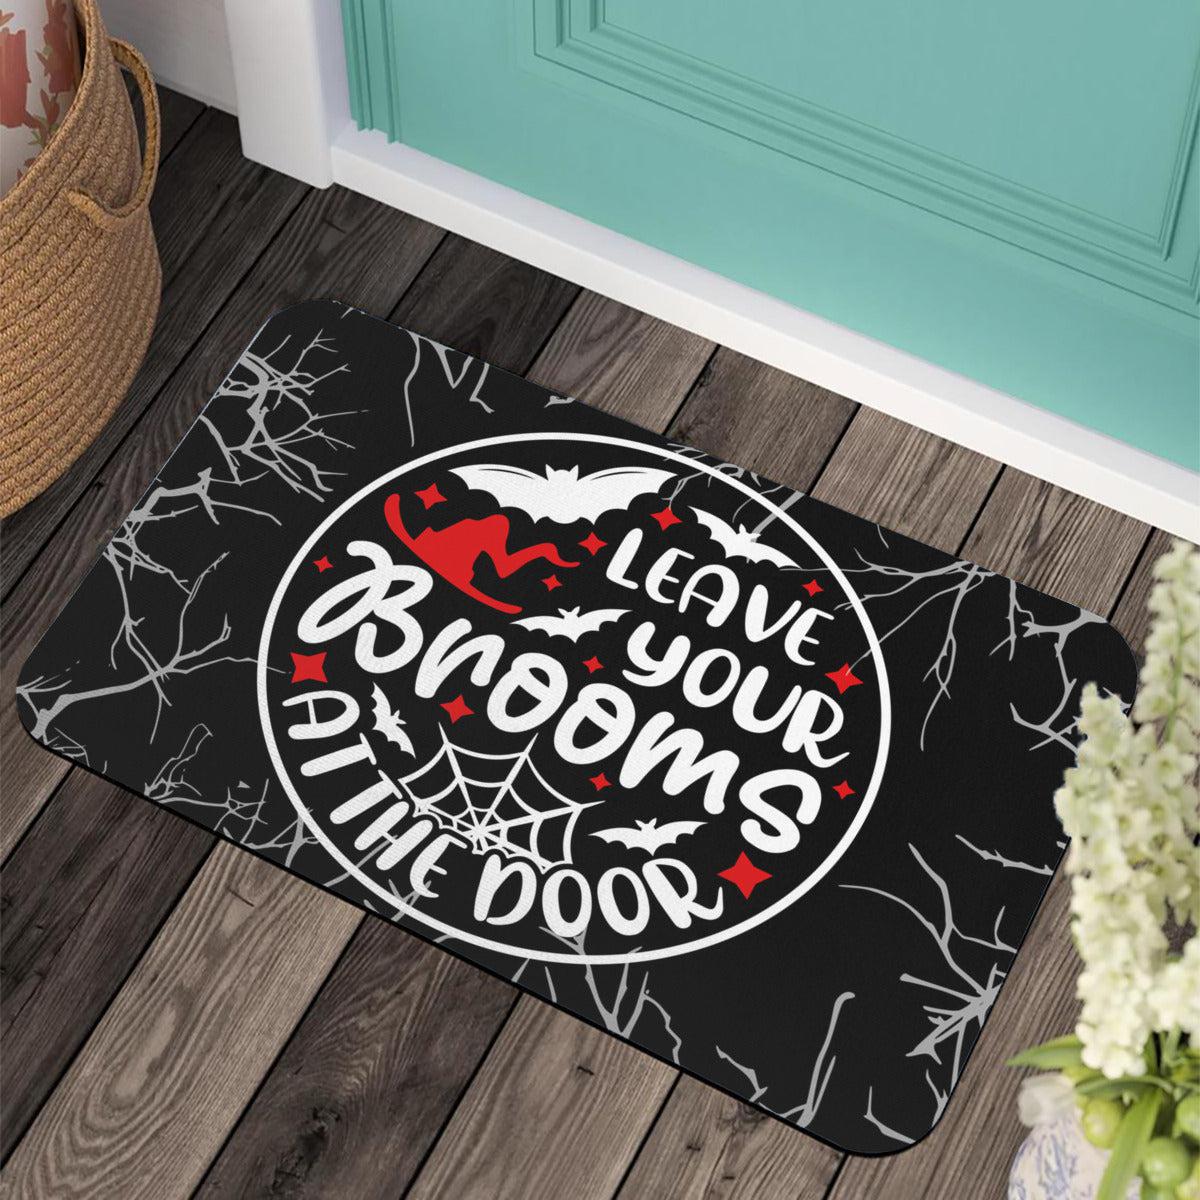 Leave your broom Witch Doormat Halloween Doormat-MoonChildWorld